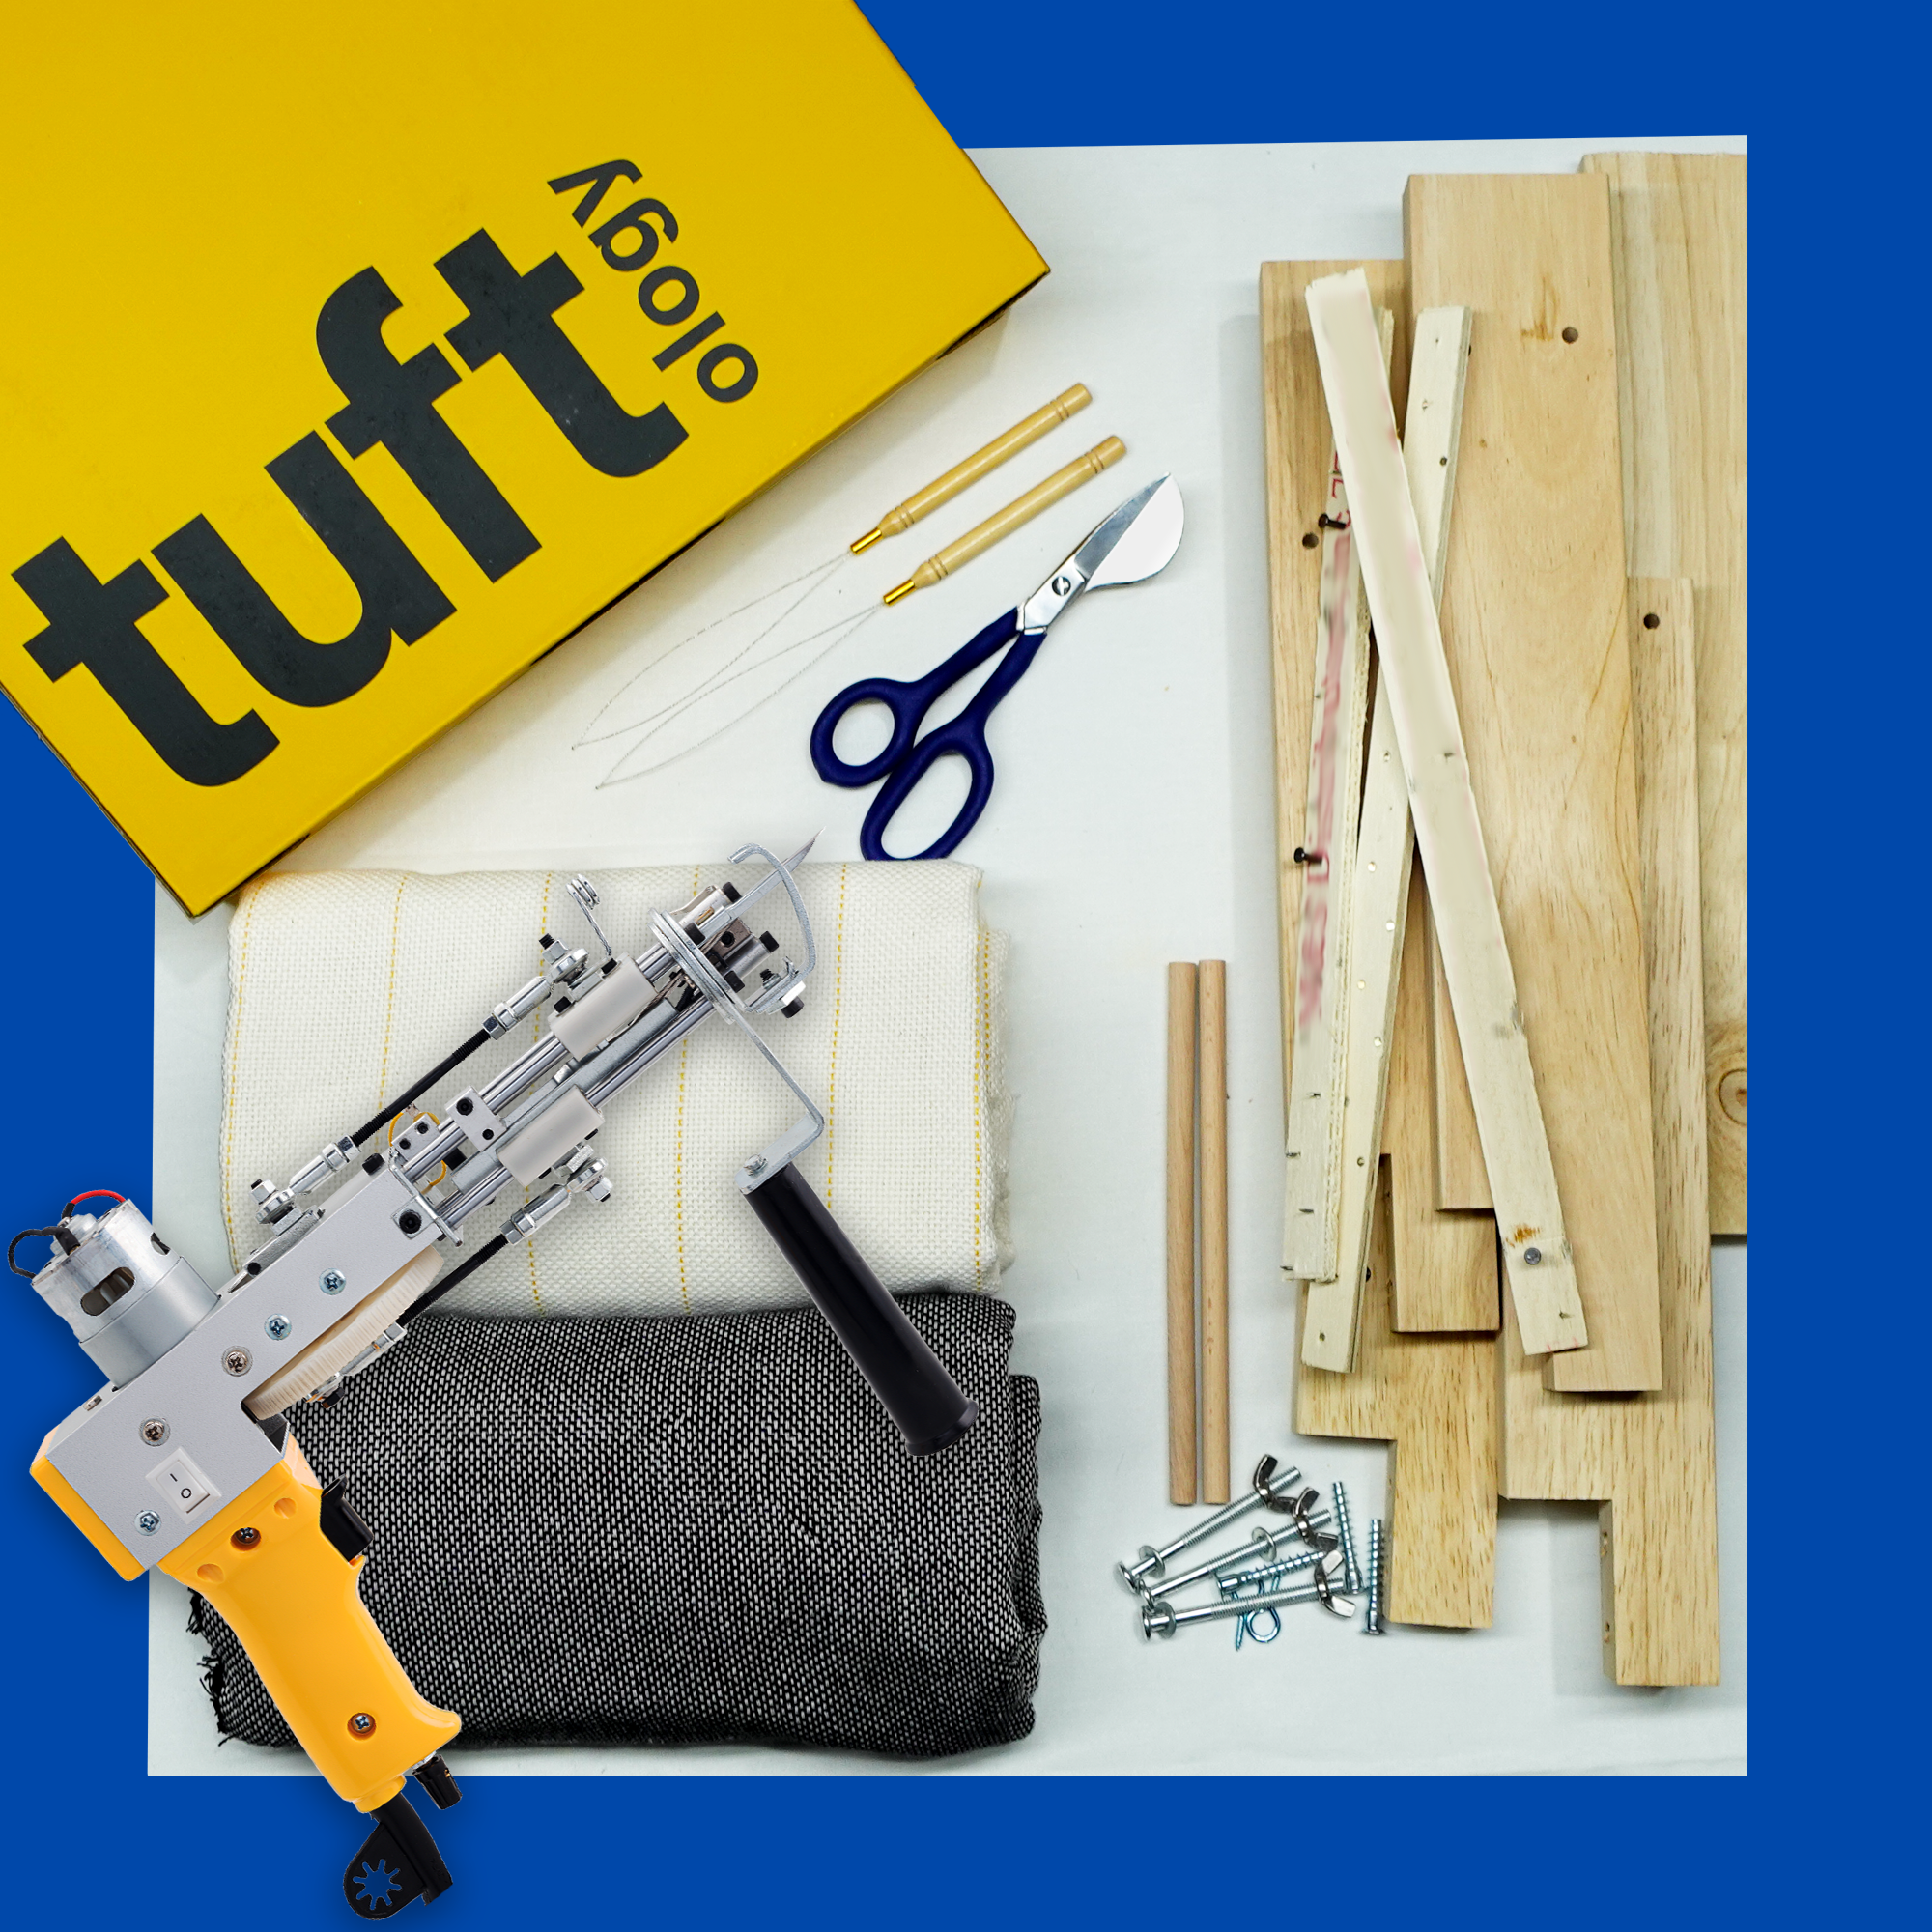 Tufting starter kit for beginners – LeTufting